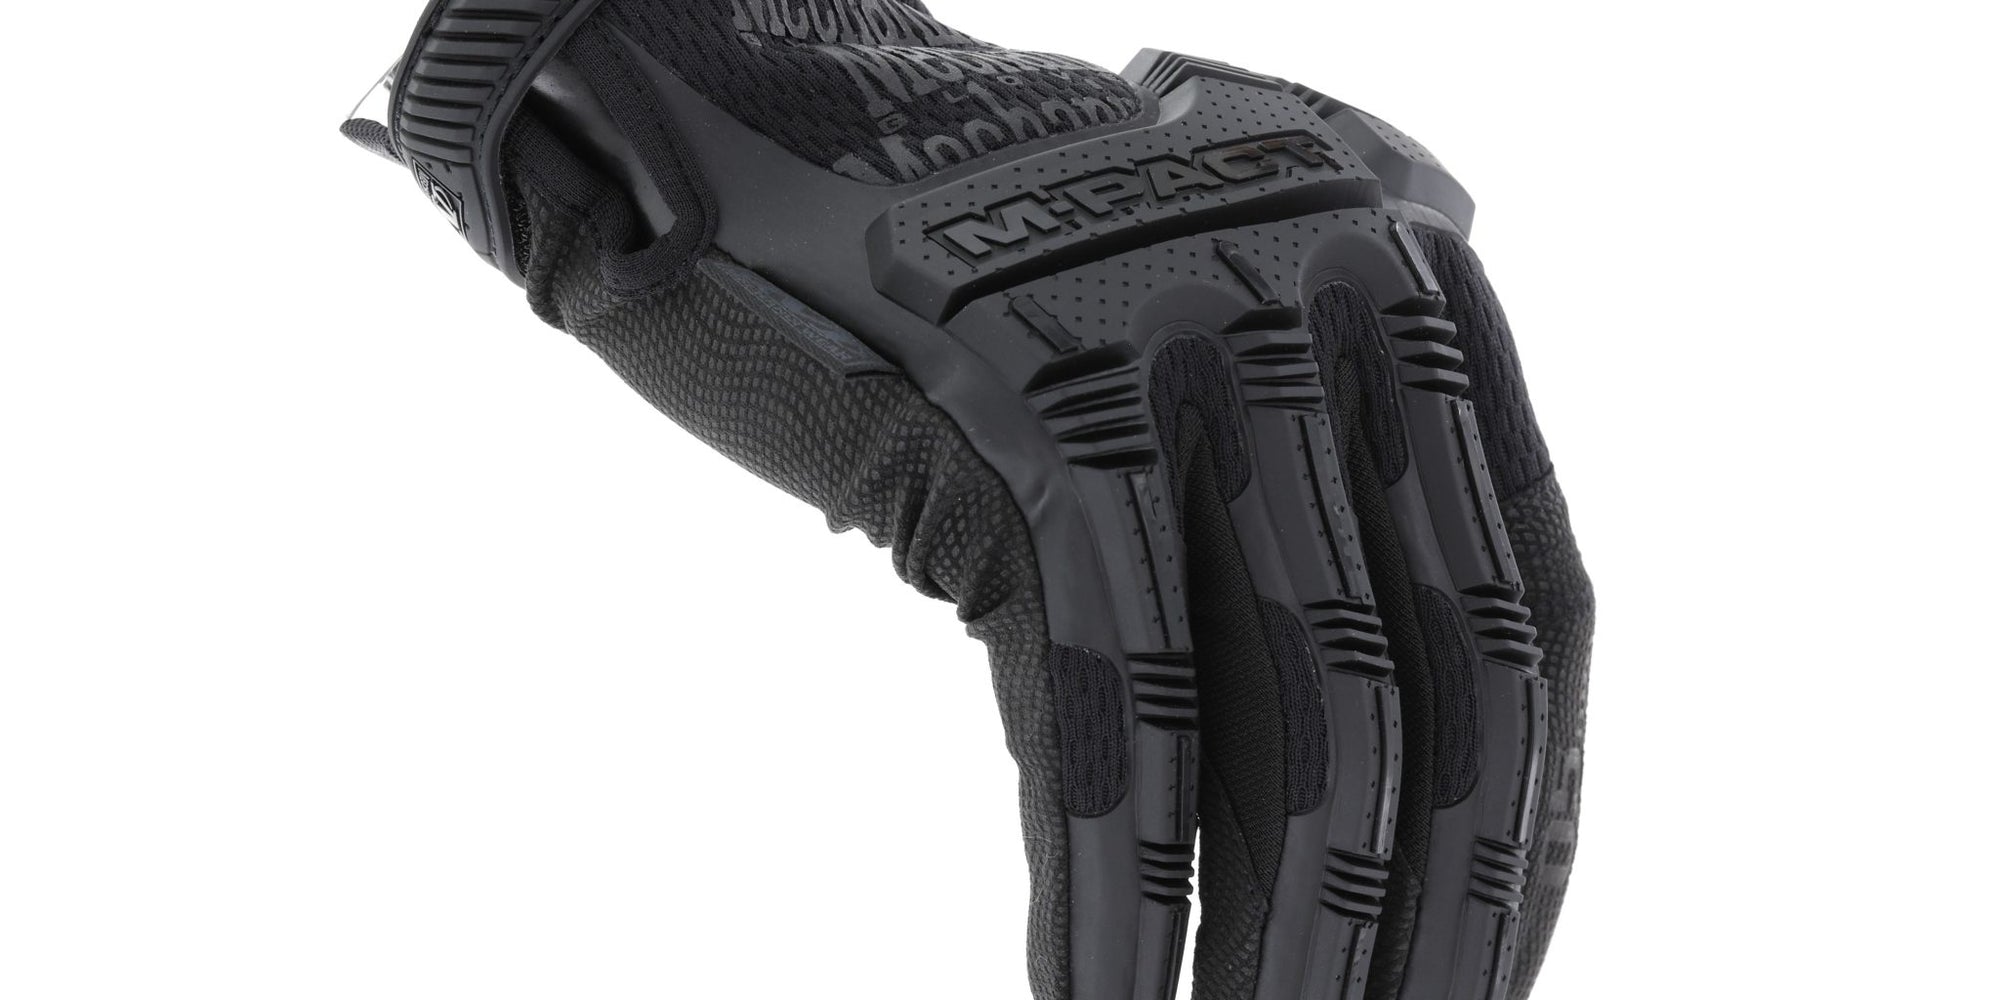 Mechanix Wear M-Pact Tactical Glove Tactical Gear Australia suppliers of Mechanix Gloves Tactical Gear